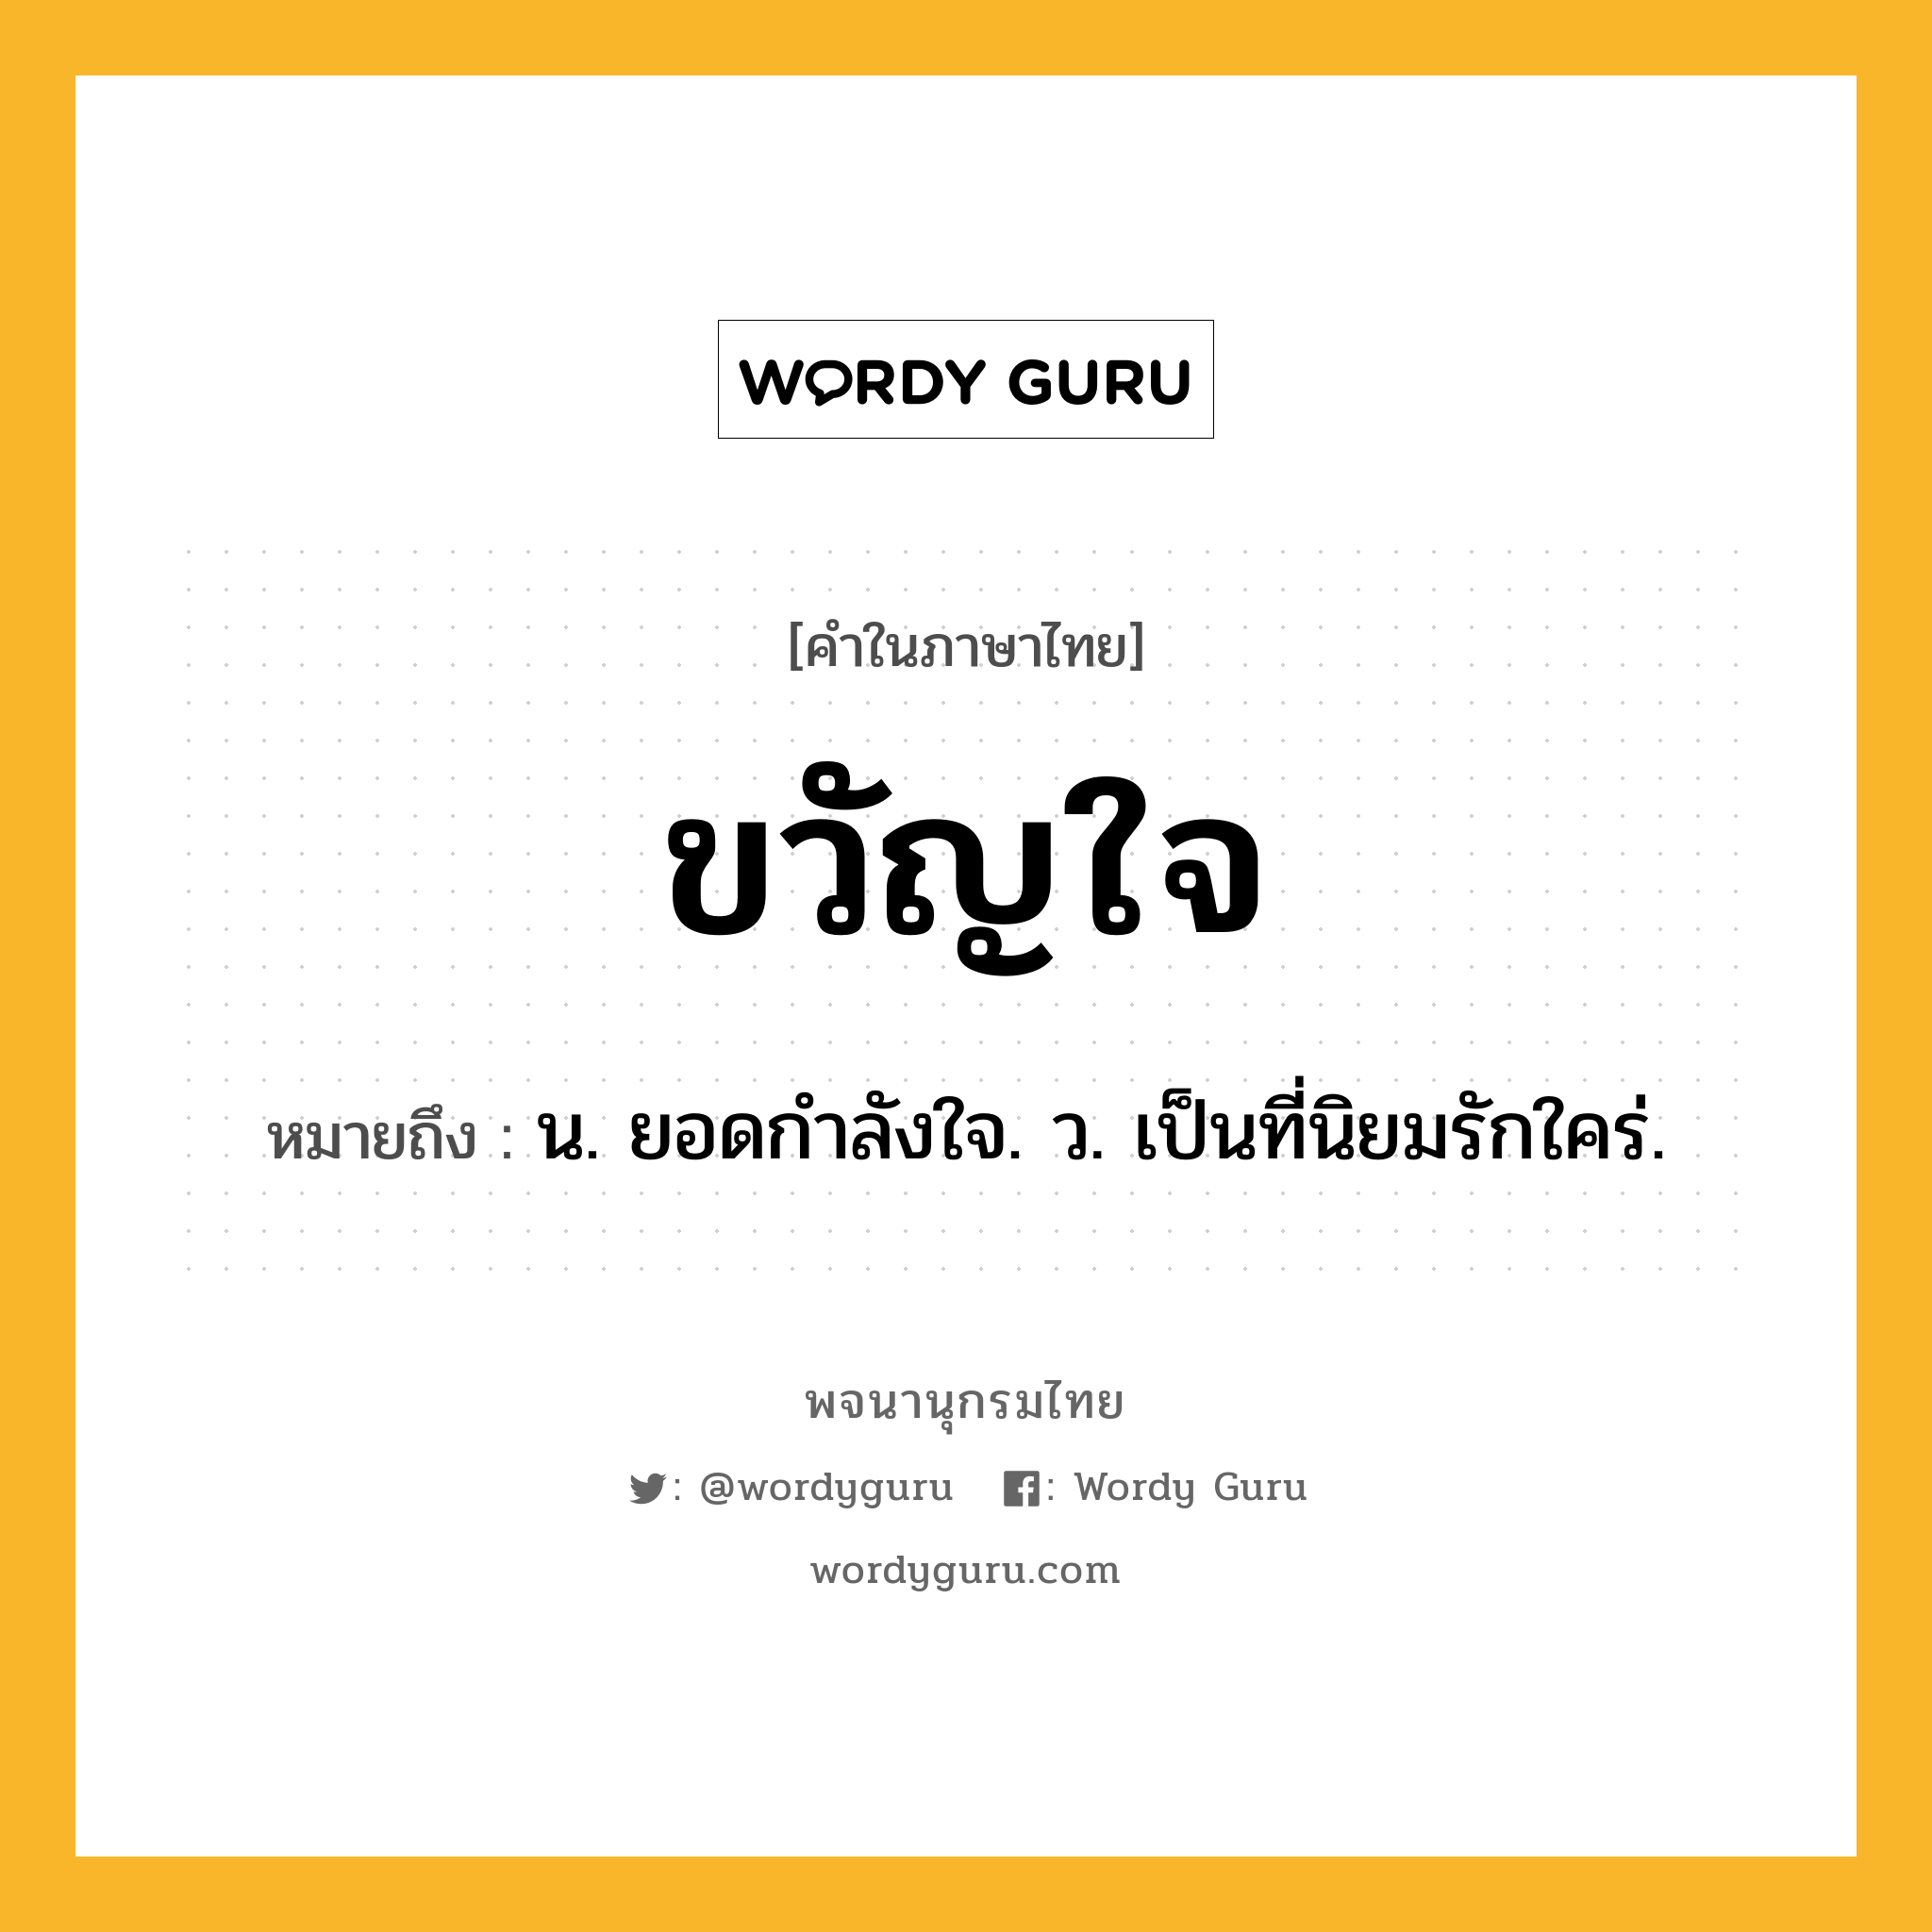 ขวัญใจ หมายถึงอะไร?, คำในภาษาไทย ขวัญใจ หมายถึง น. ยอดกําลังใจ. ว. เป็นที่นิยมรักใคร่.